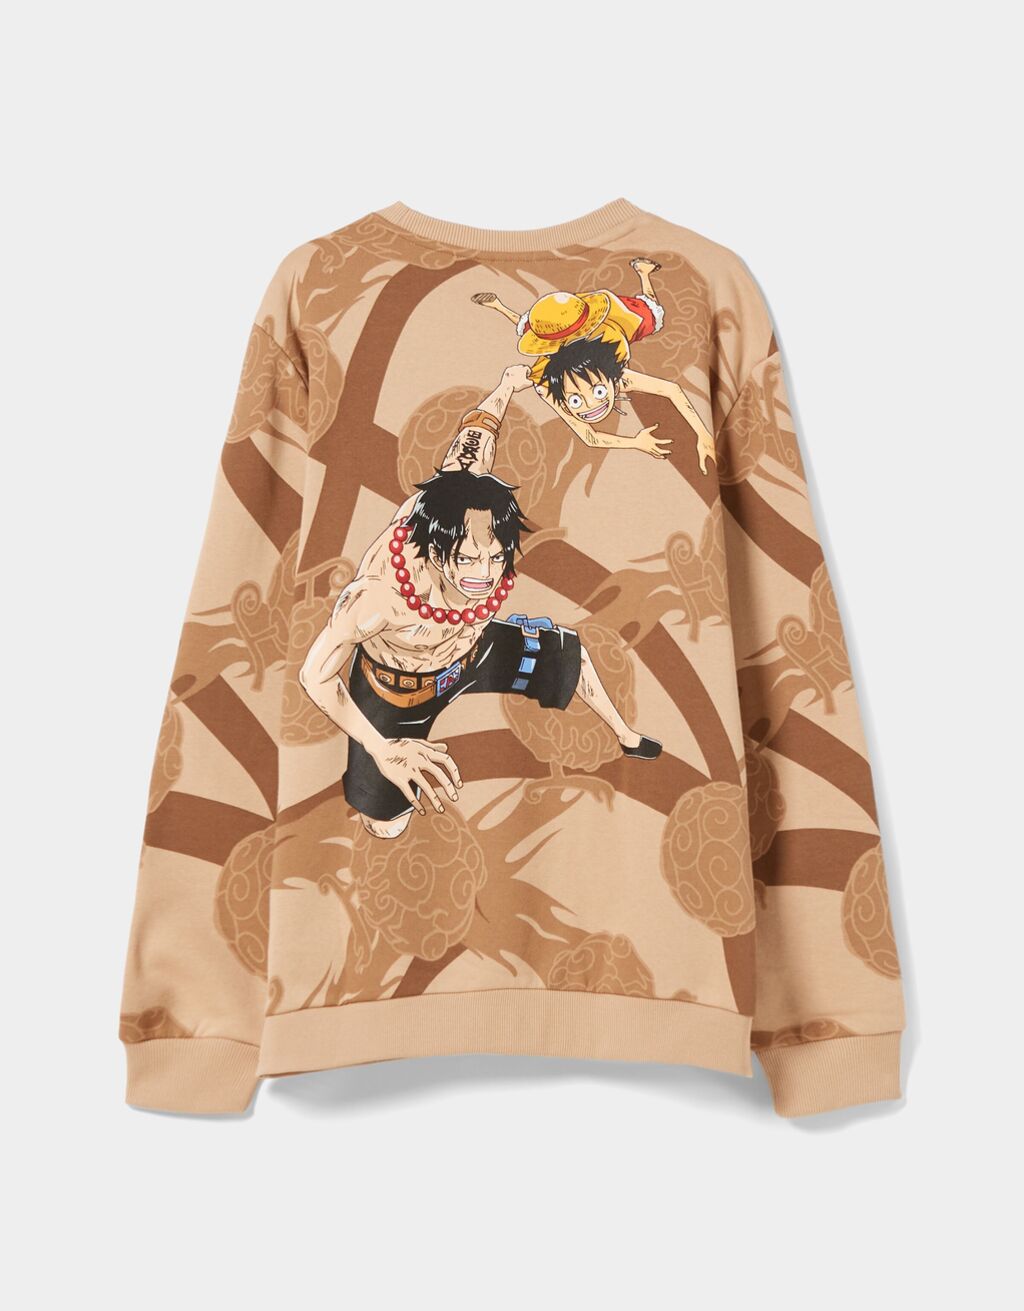 Sweatshirt mit Rundausschnitt und One Piece-Print